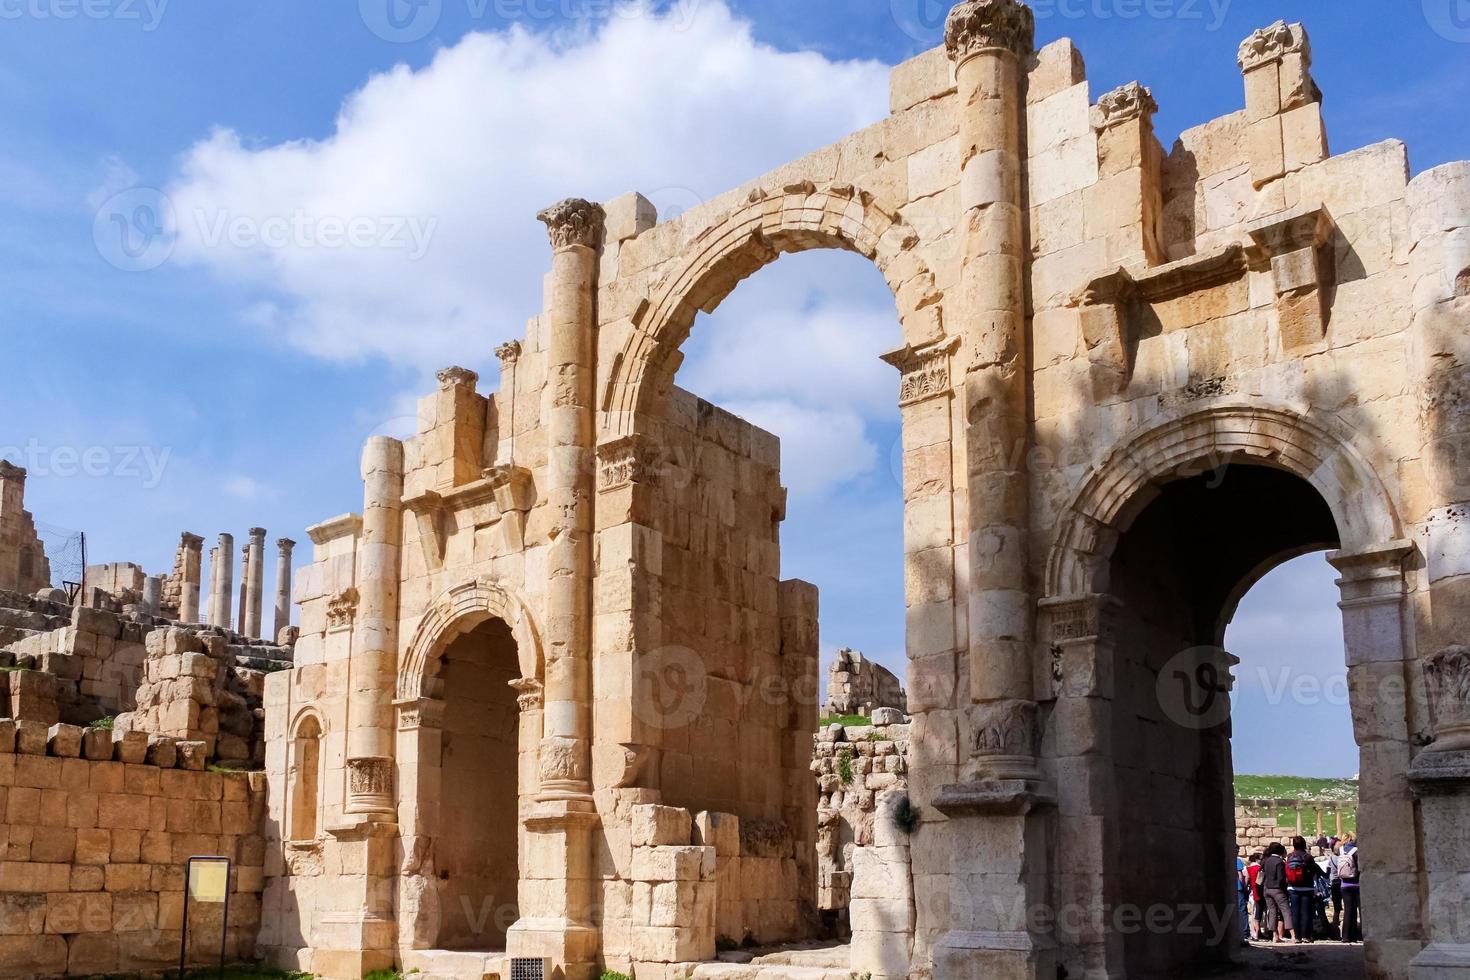 södra porten, romerska ruiner i staden Jerash foto